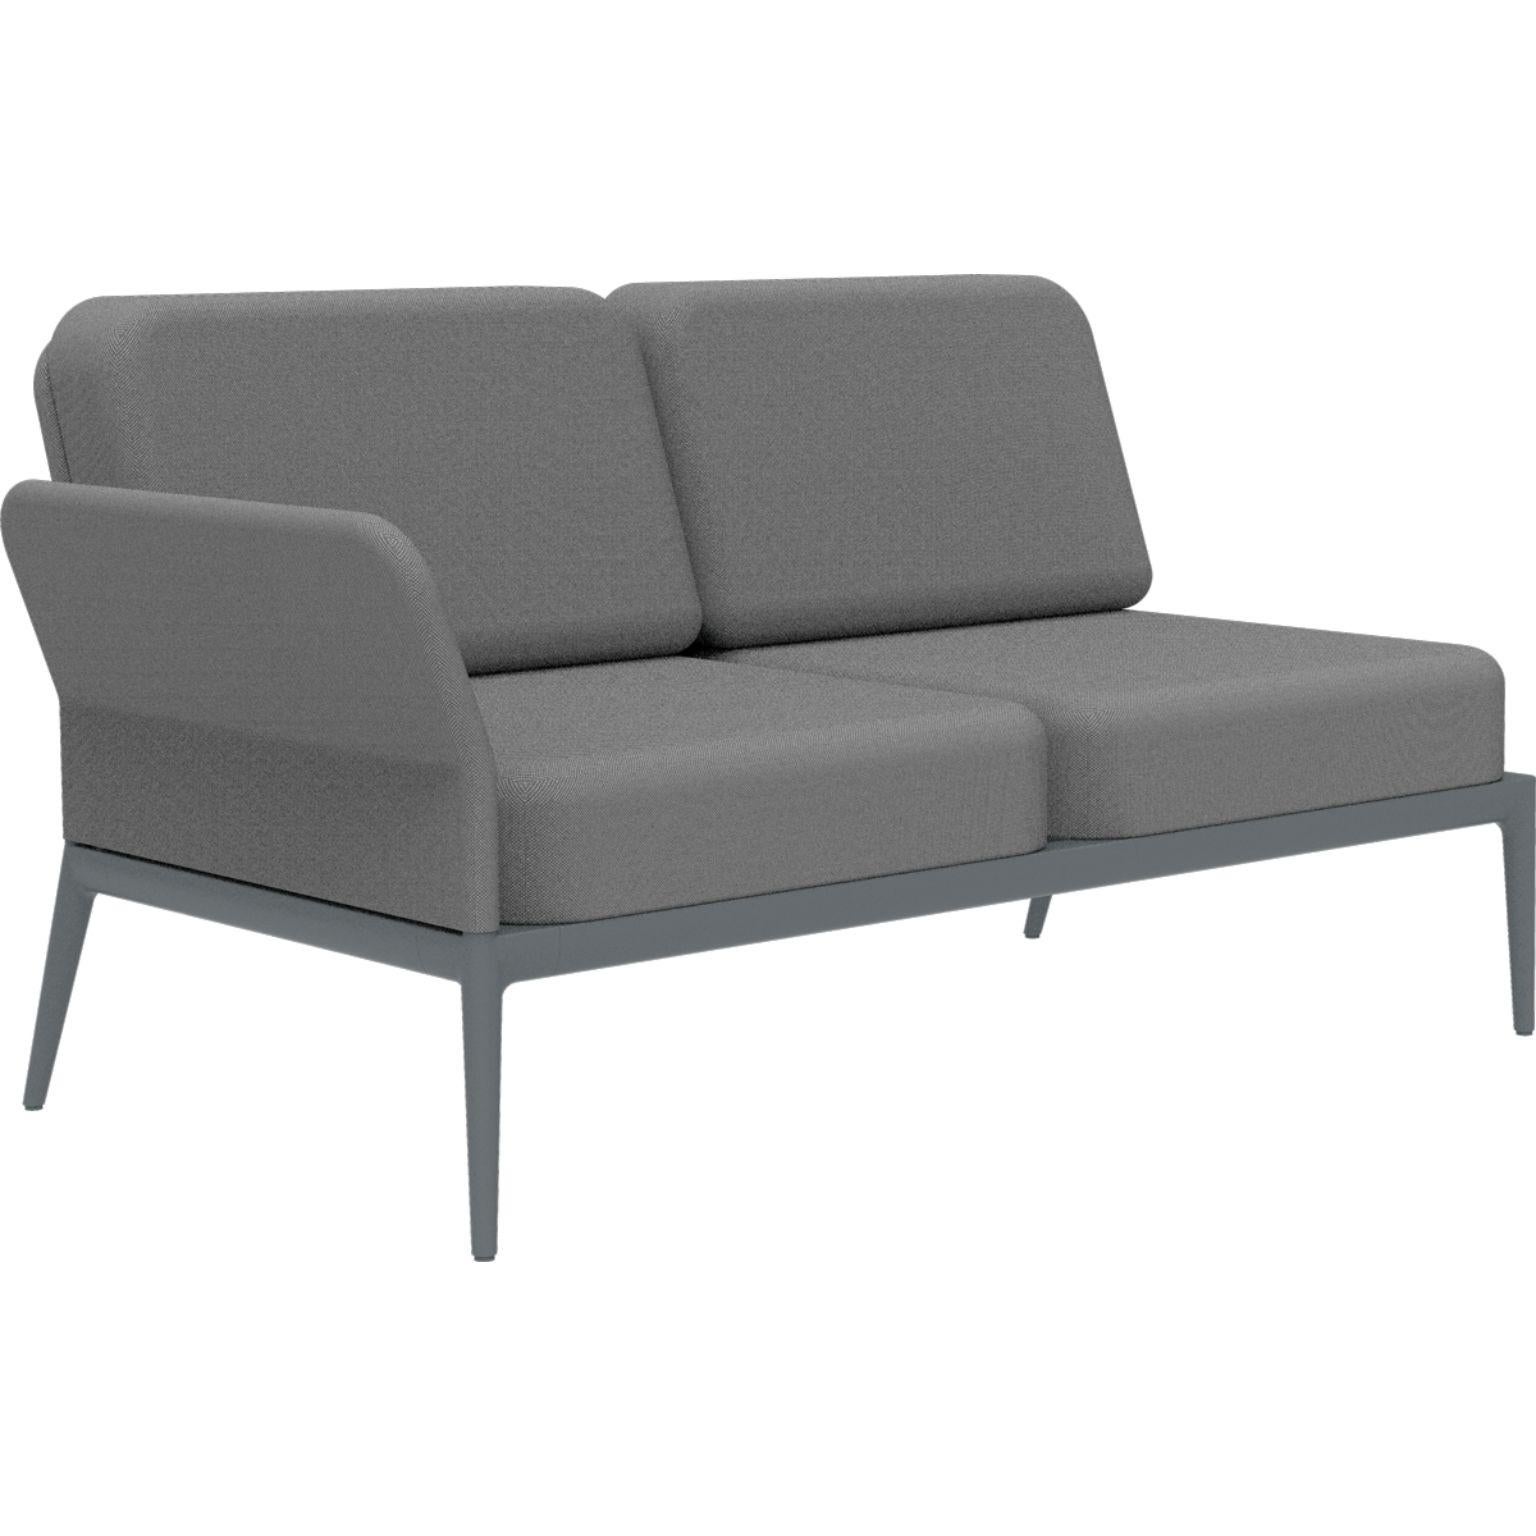 Modulares Sofa mit grauem Deckel von MOWEE
Abmessungen: T83 x B148 x H81 cm (Sitzhöhe 42 cm).
MATERIAL: Aluminium und Polstermaterial.
Gewicht: 29 kg.
Auch in verschiedenen Farben und Ausführungen erhältlich. 

Eine Collection'S, die durch